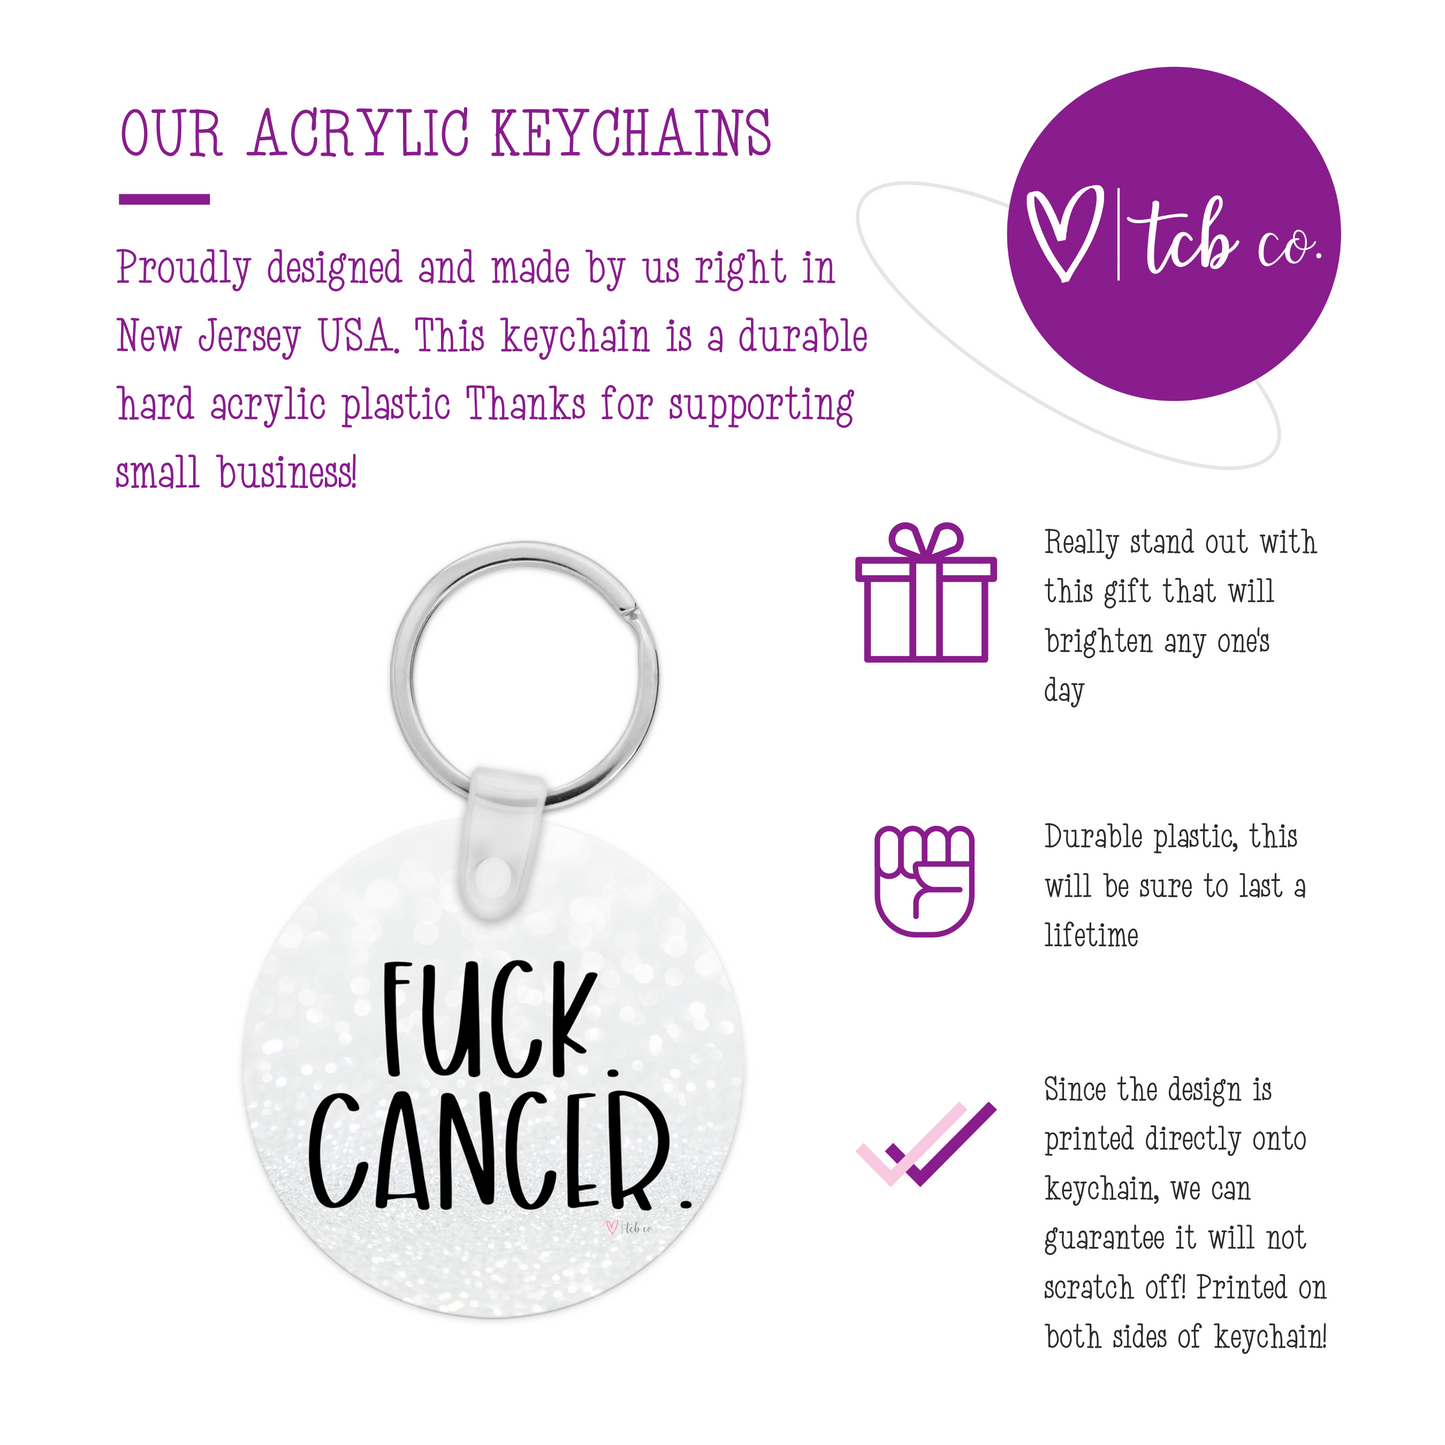 Fuck Cancer Acrylic Keychain